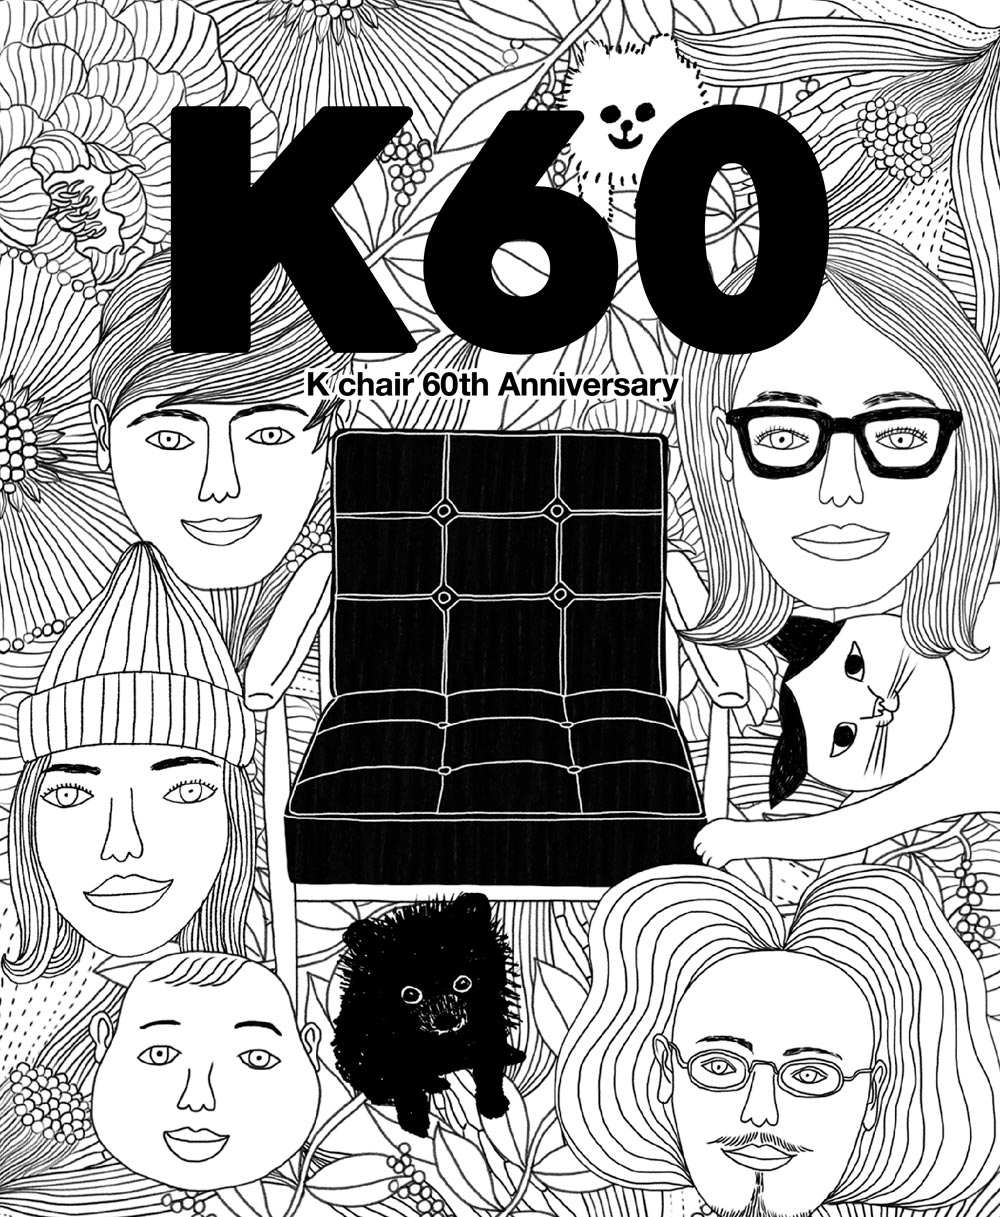 K Chair 60th Anniversary